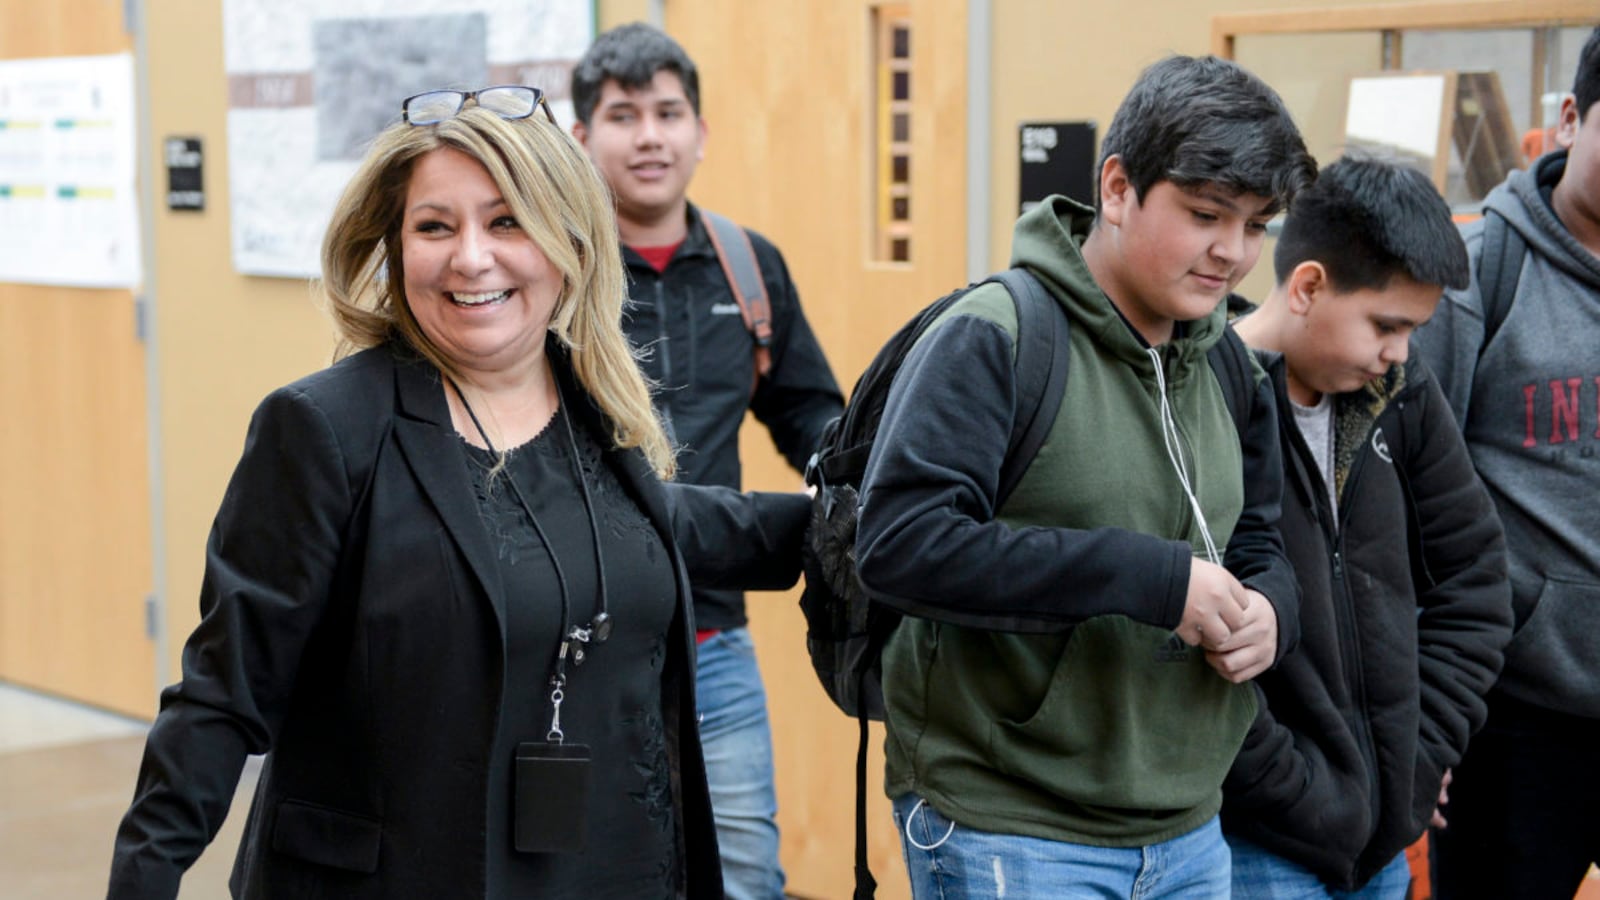 Adams City High School principal Gabriella Maldonado jokes with students in the hallway Monday, Feb. 4, 2019 in Commerce City, Colorado.